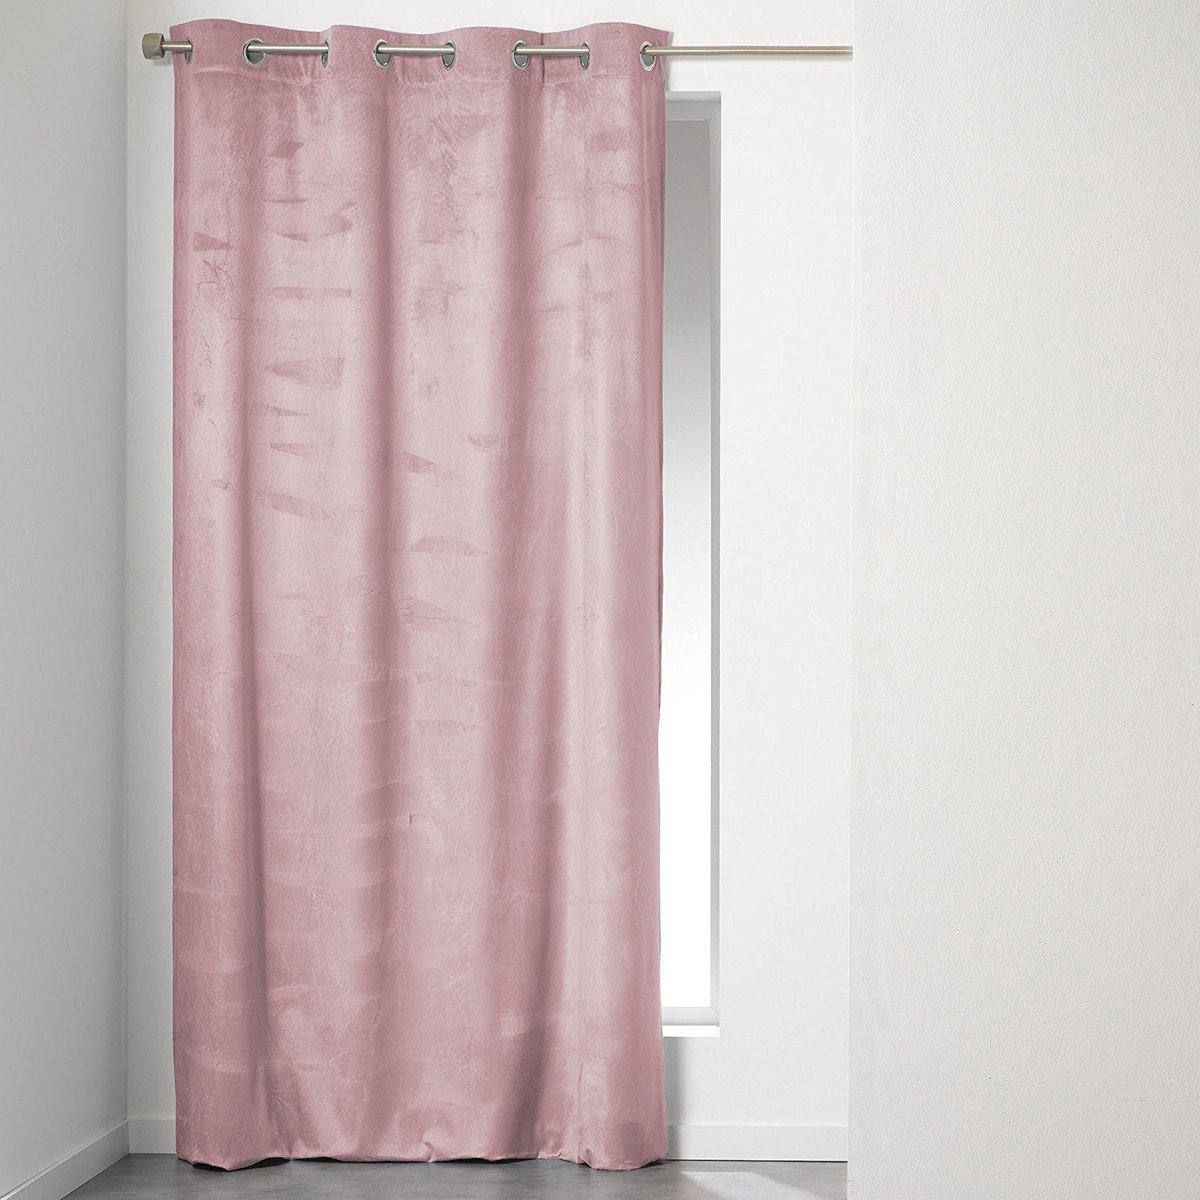 Intens vrek Anoi Sleepp - Velvet gordijn - Velours gordijn met ringen - 140 x 240 cm - roze  | bol.com